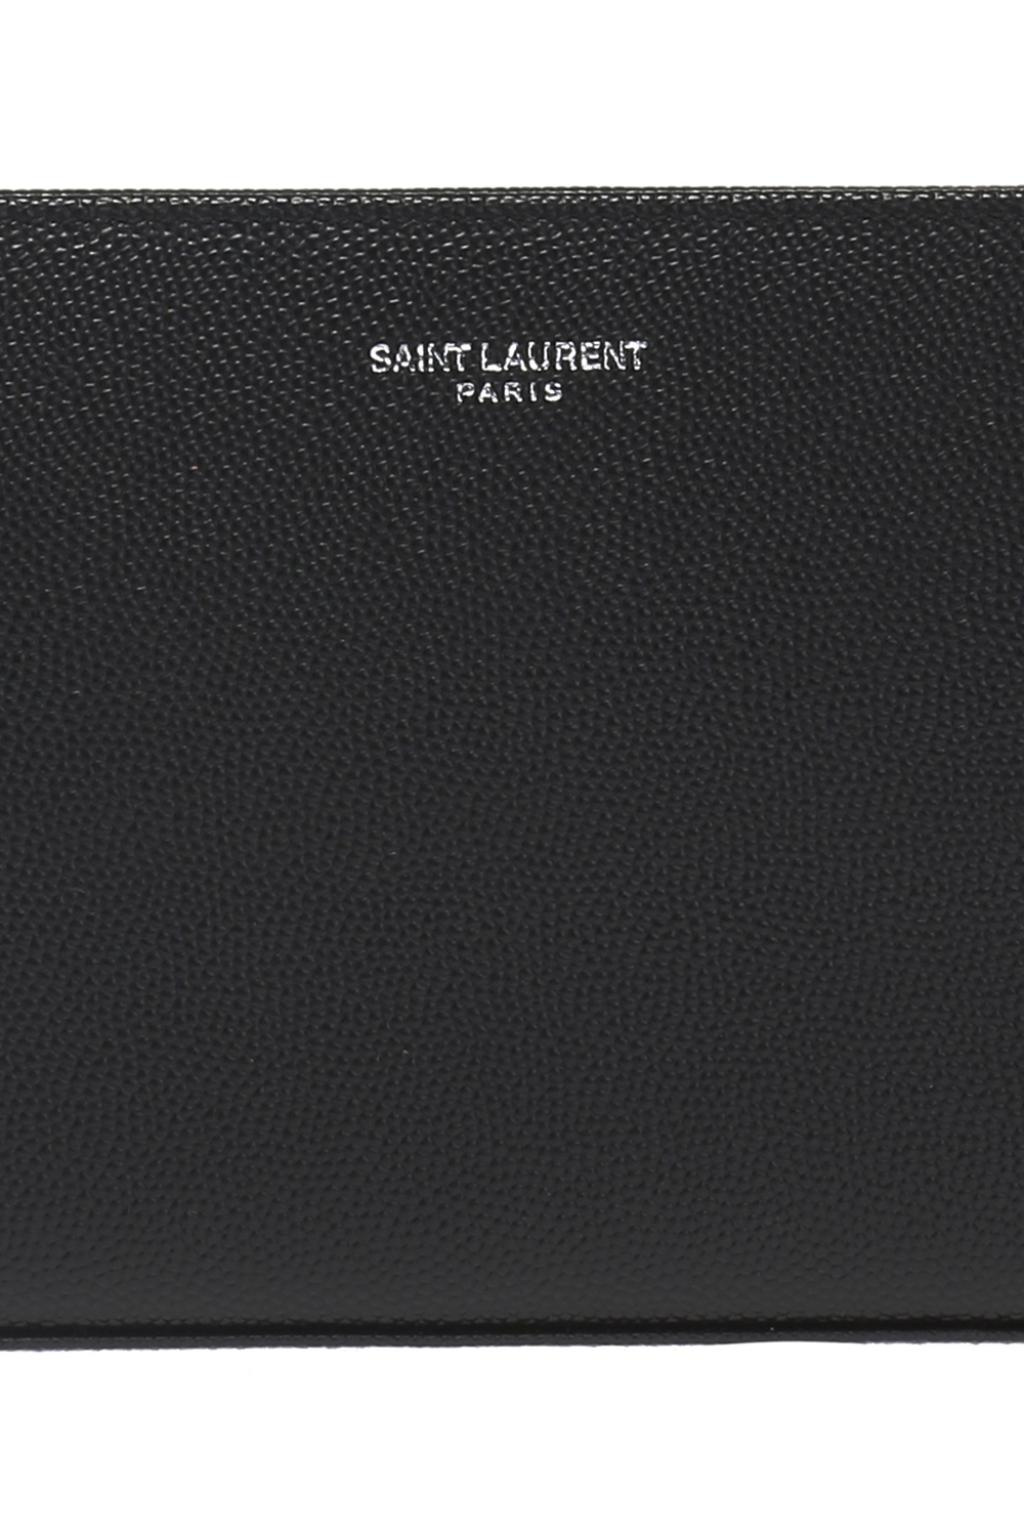 Saint Laurent Saint Laurent logo-plaque leather wallet Grün